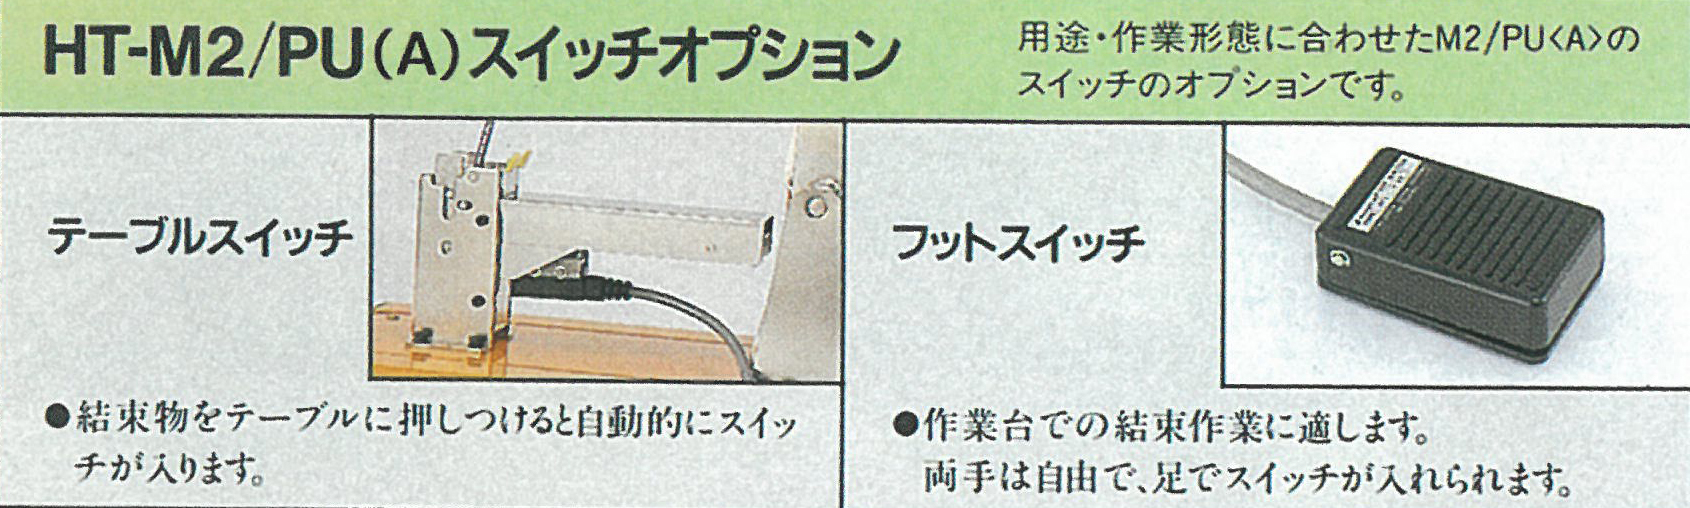 限定版 日本農業システムMAX野菜結束機おびまるHT-M2用 パワーユニット HT-PU AN